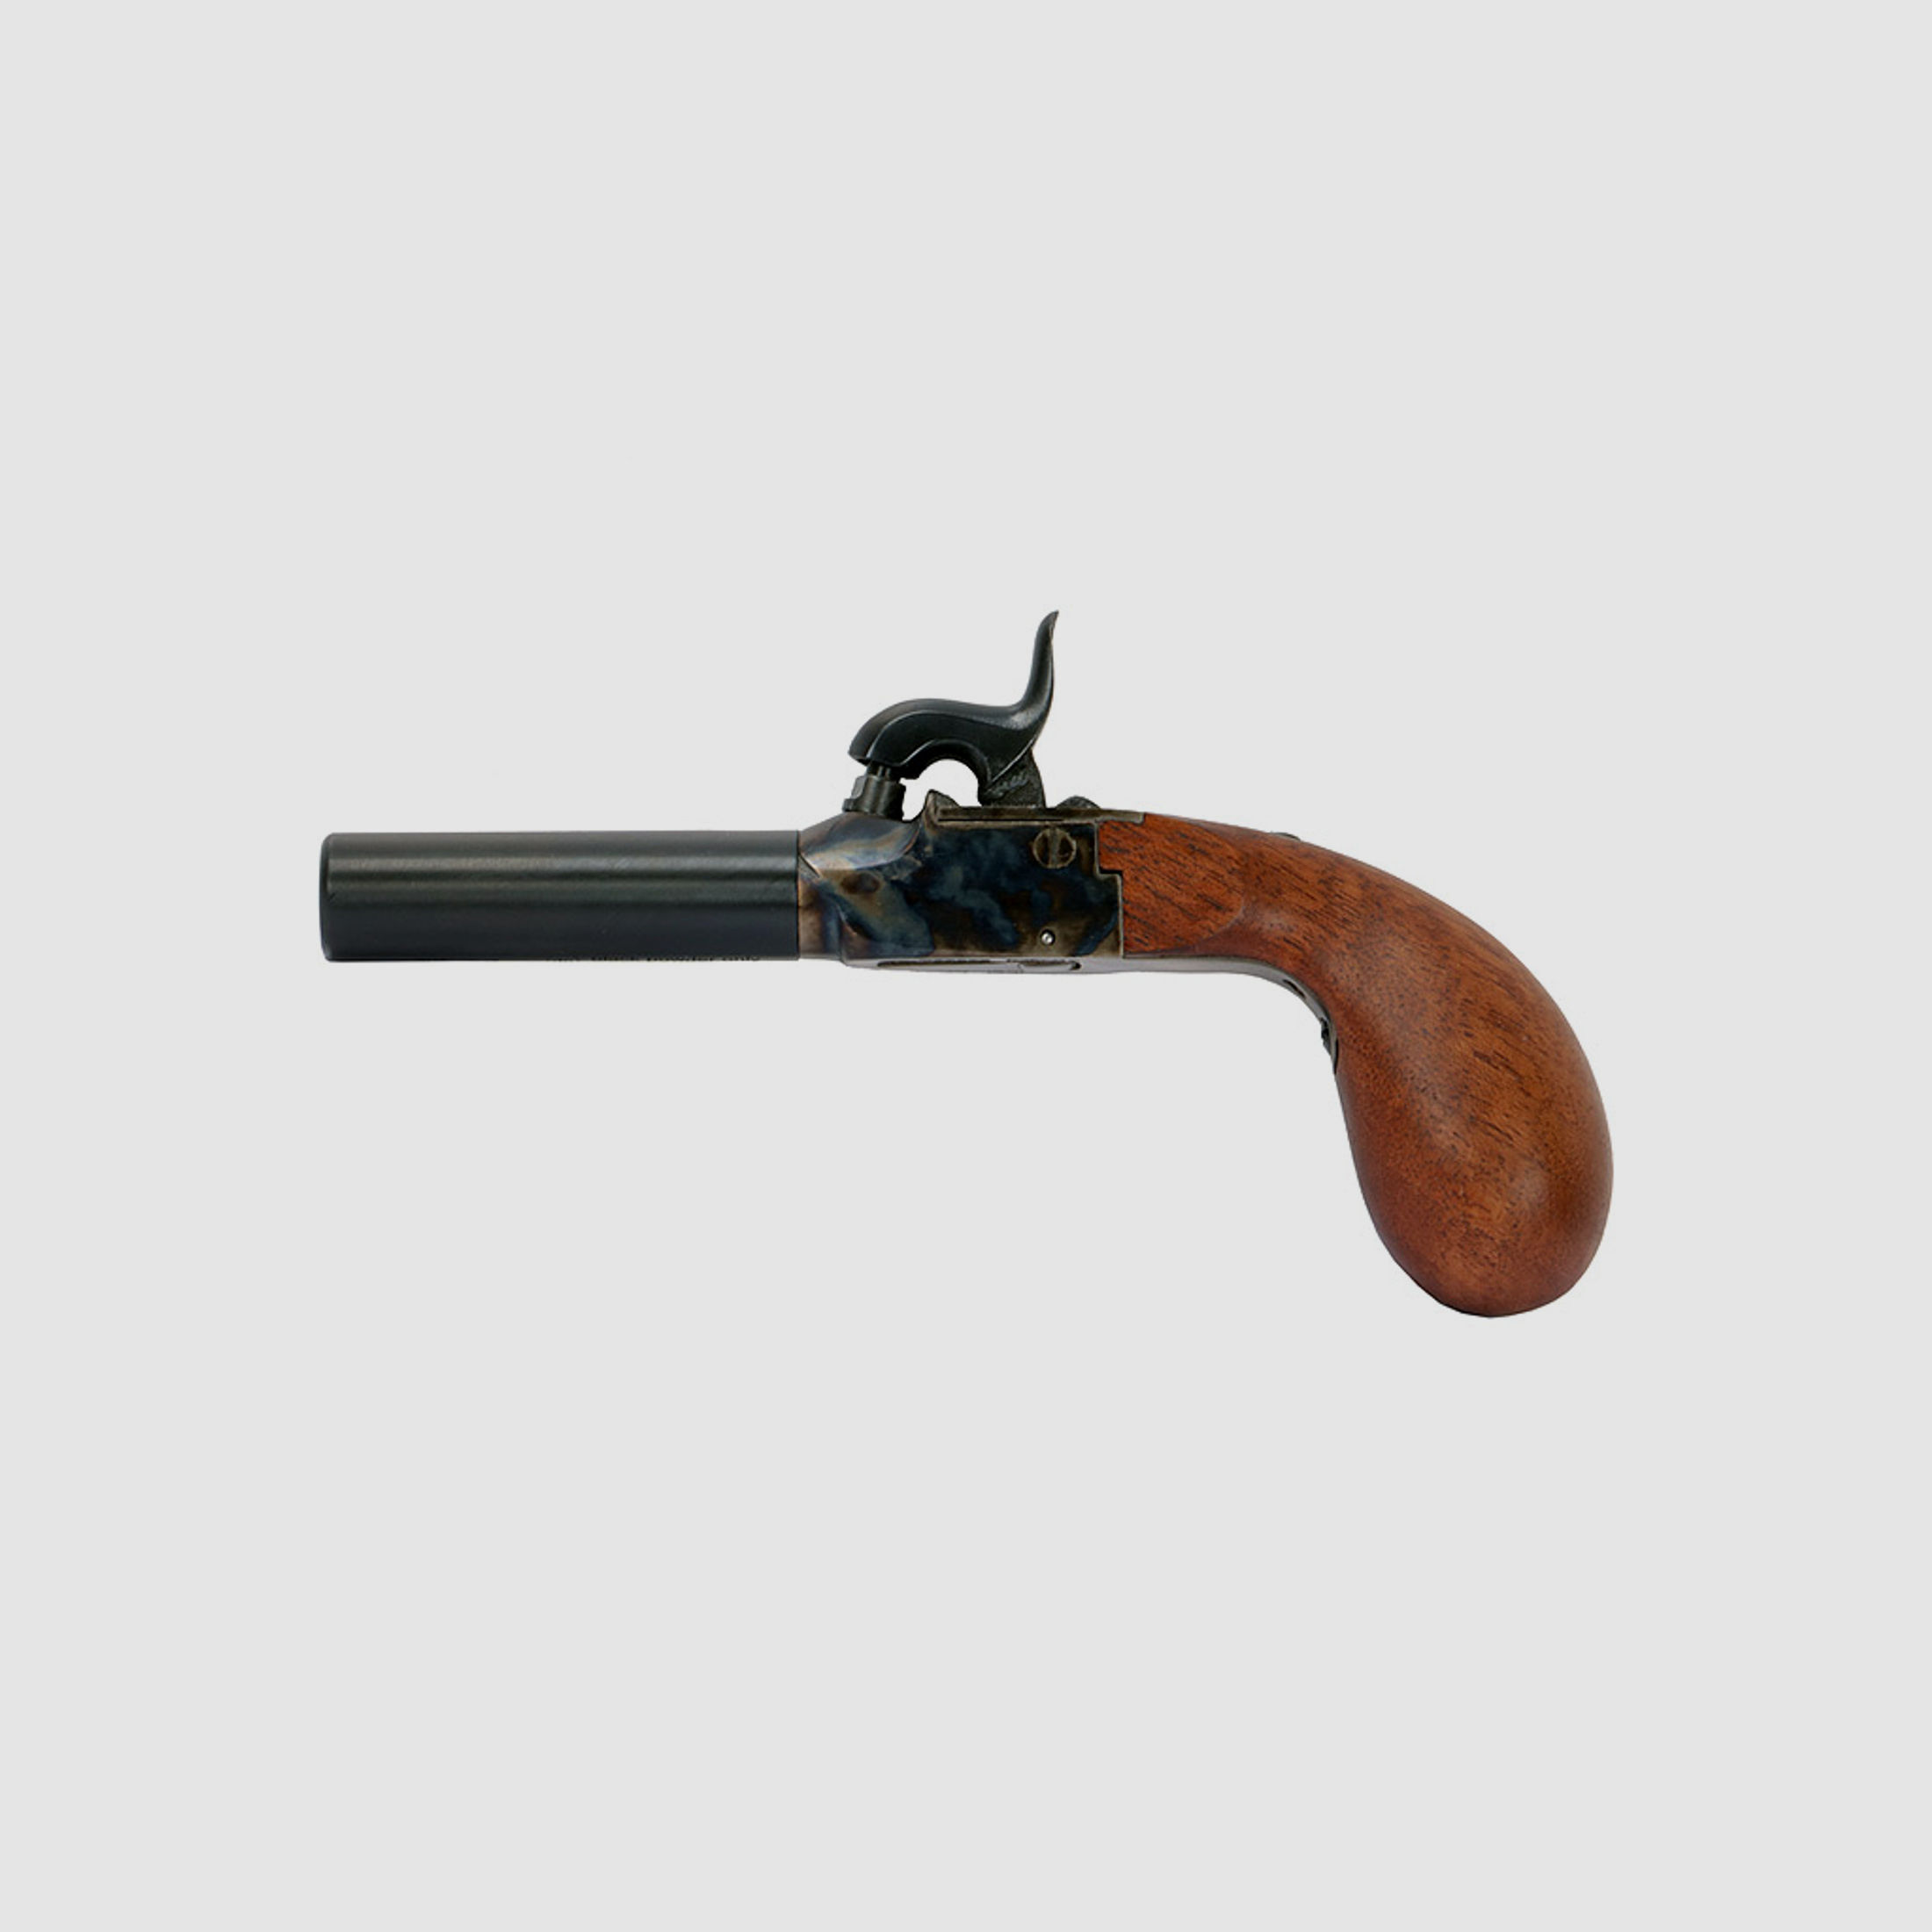 Bausatz Perkussionspistole Pedersoli Derringer Liegi Standard, Kaliber .44 (P18)